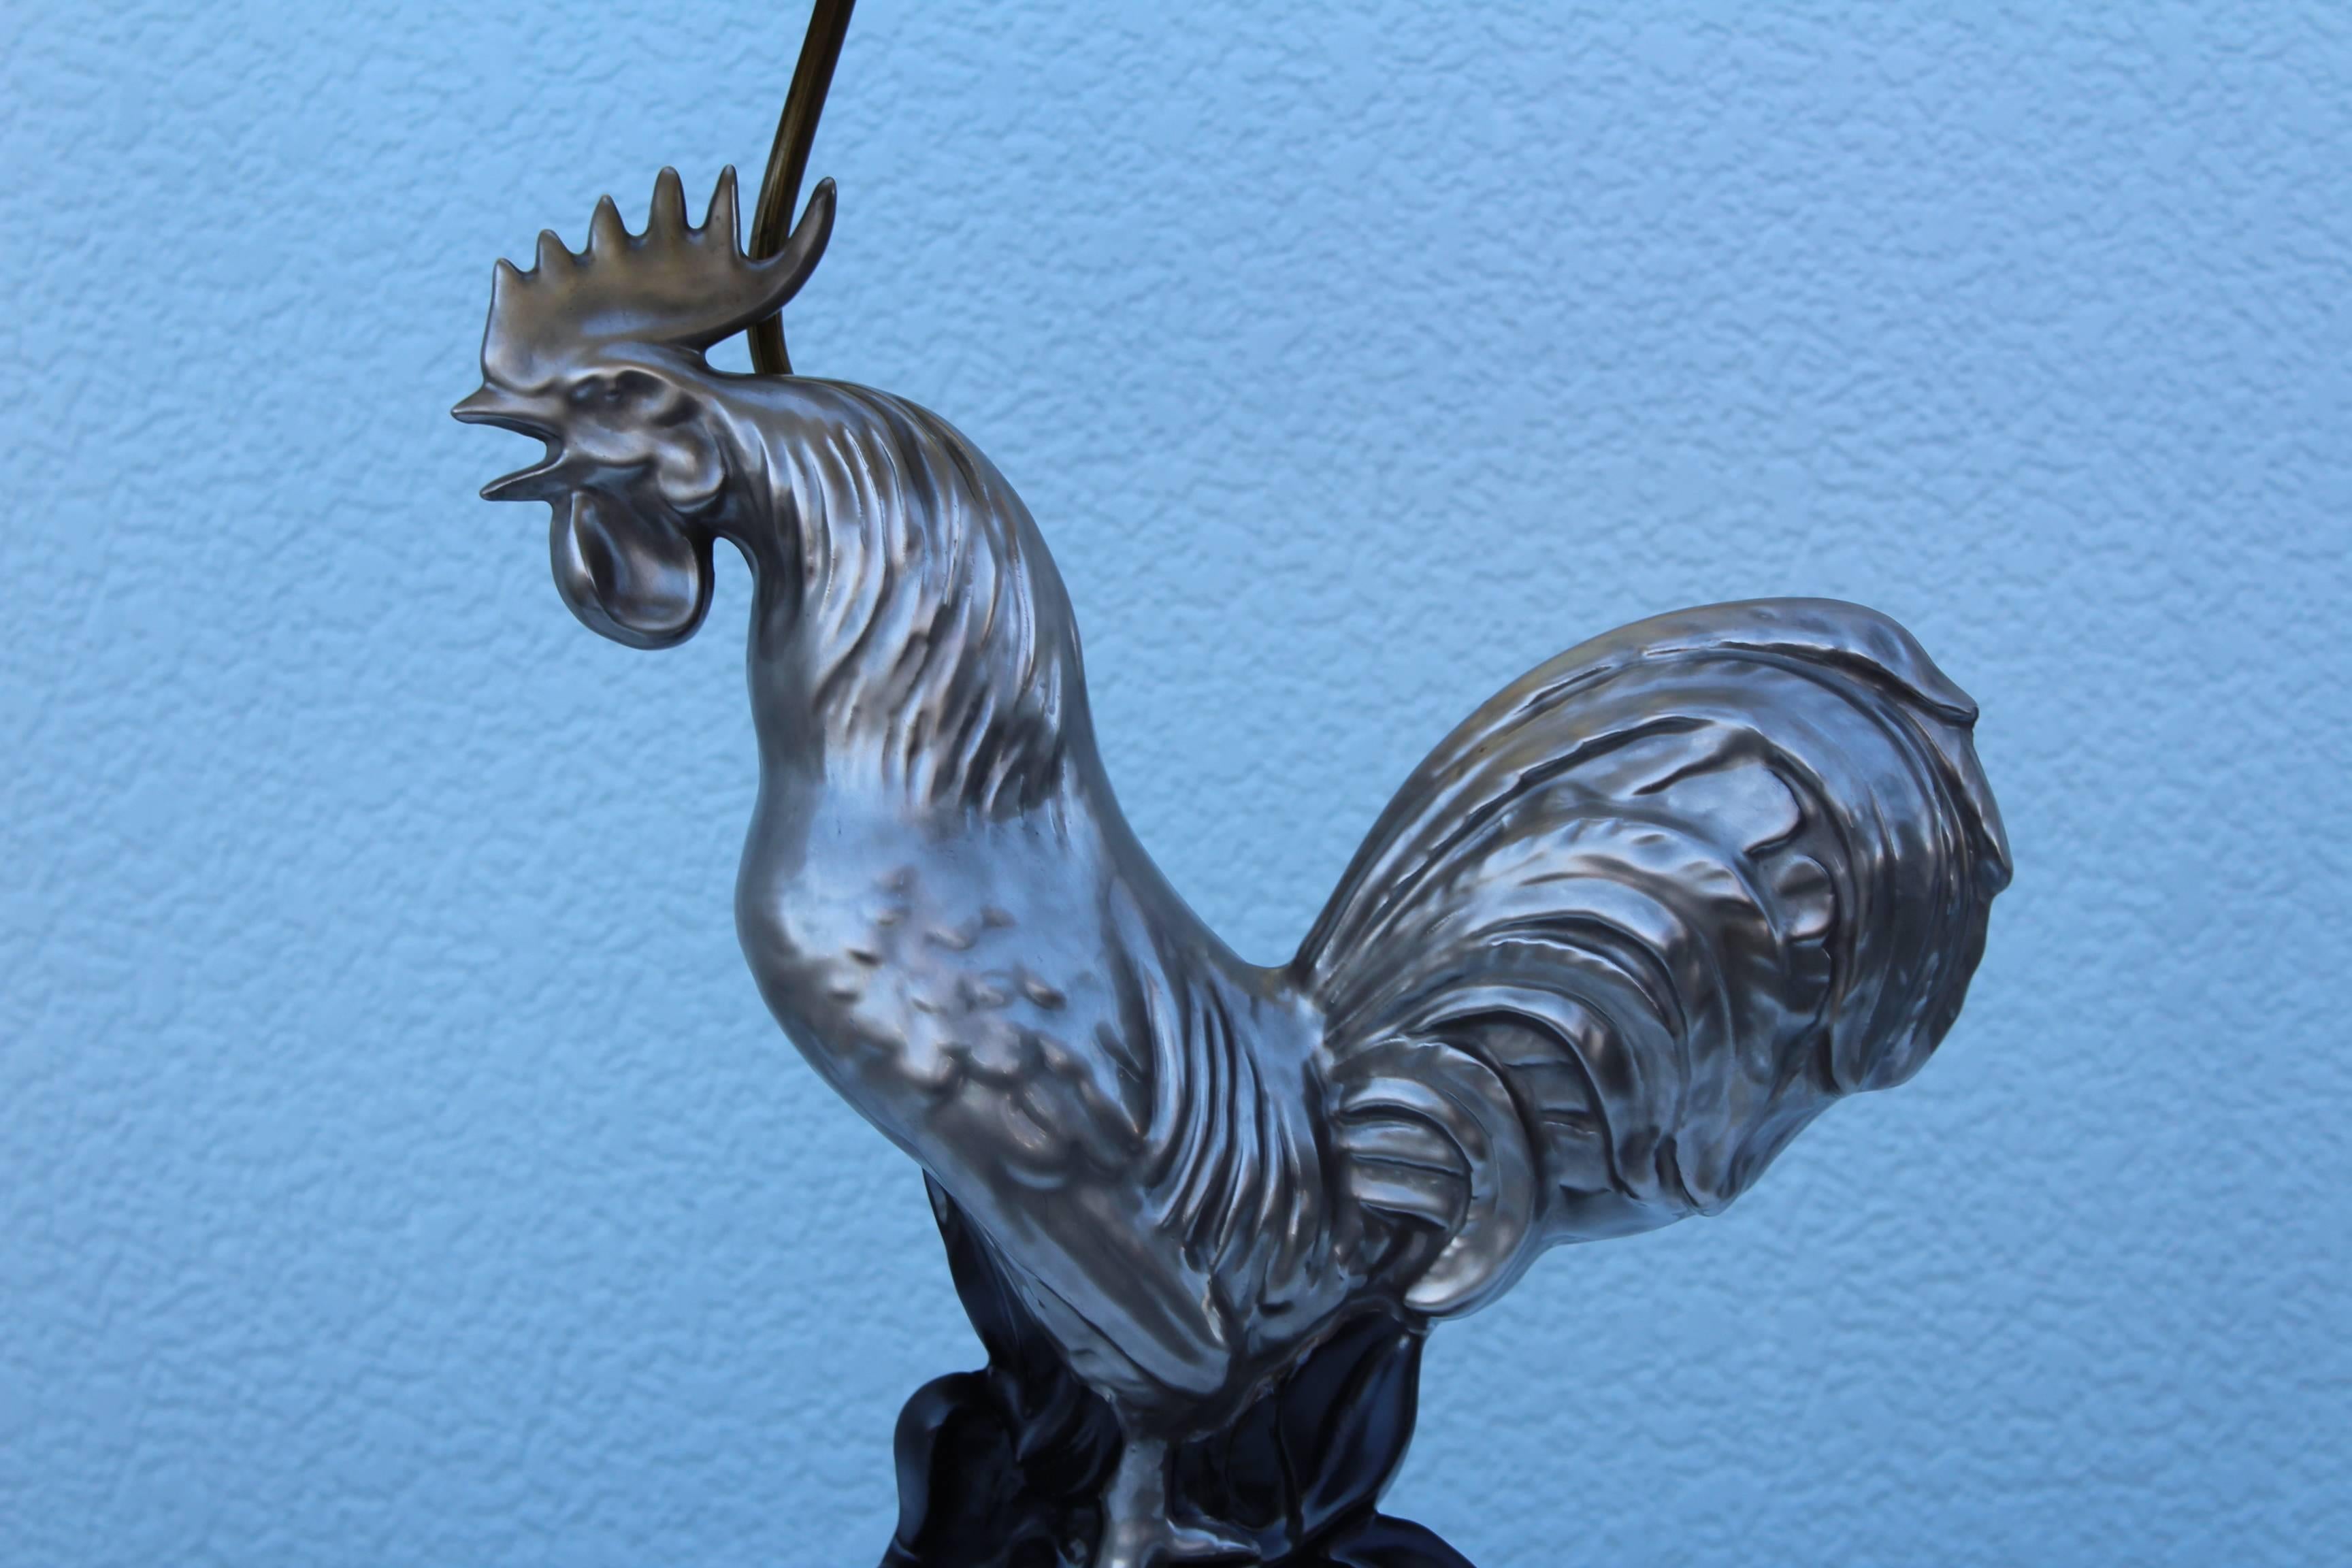 ceramic rooster lamp